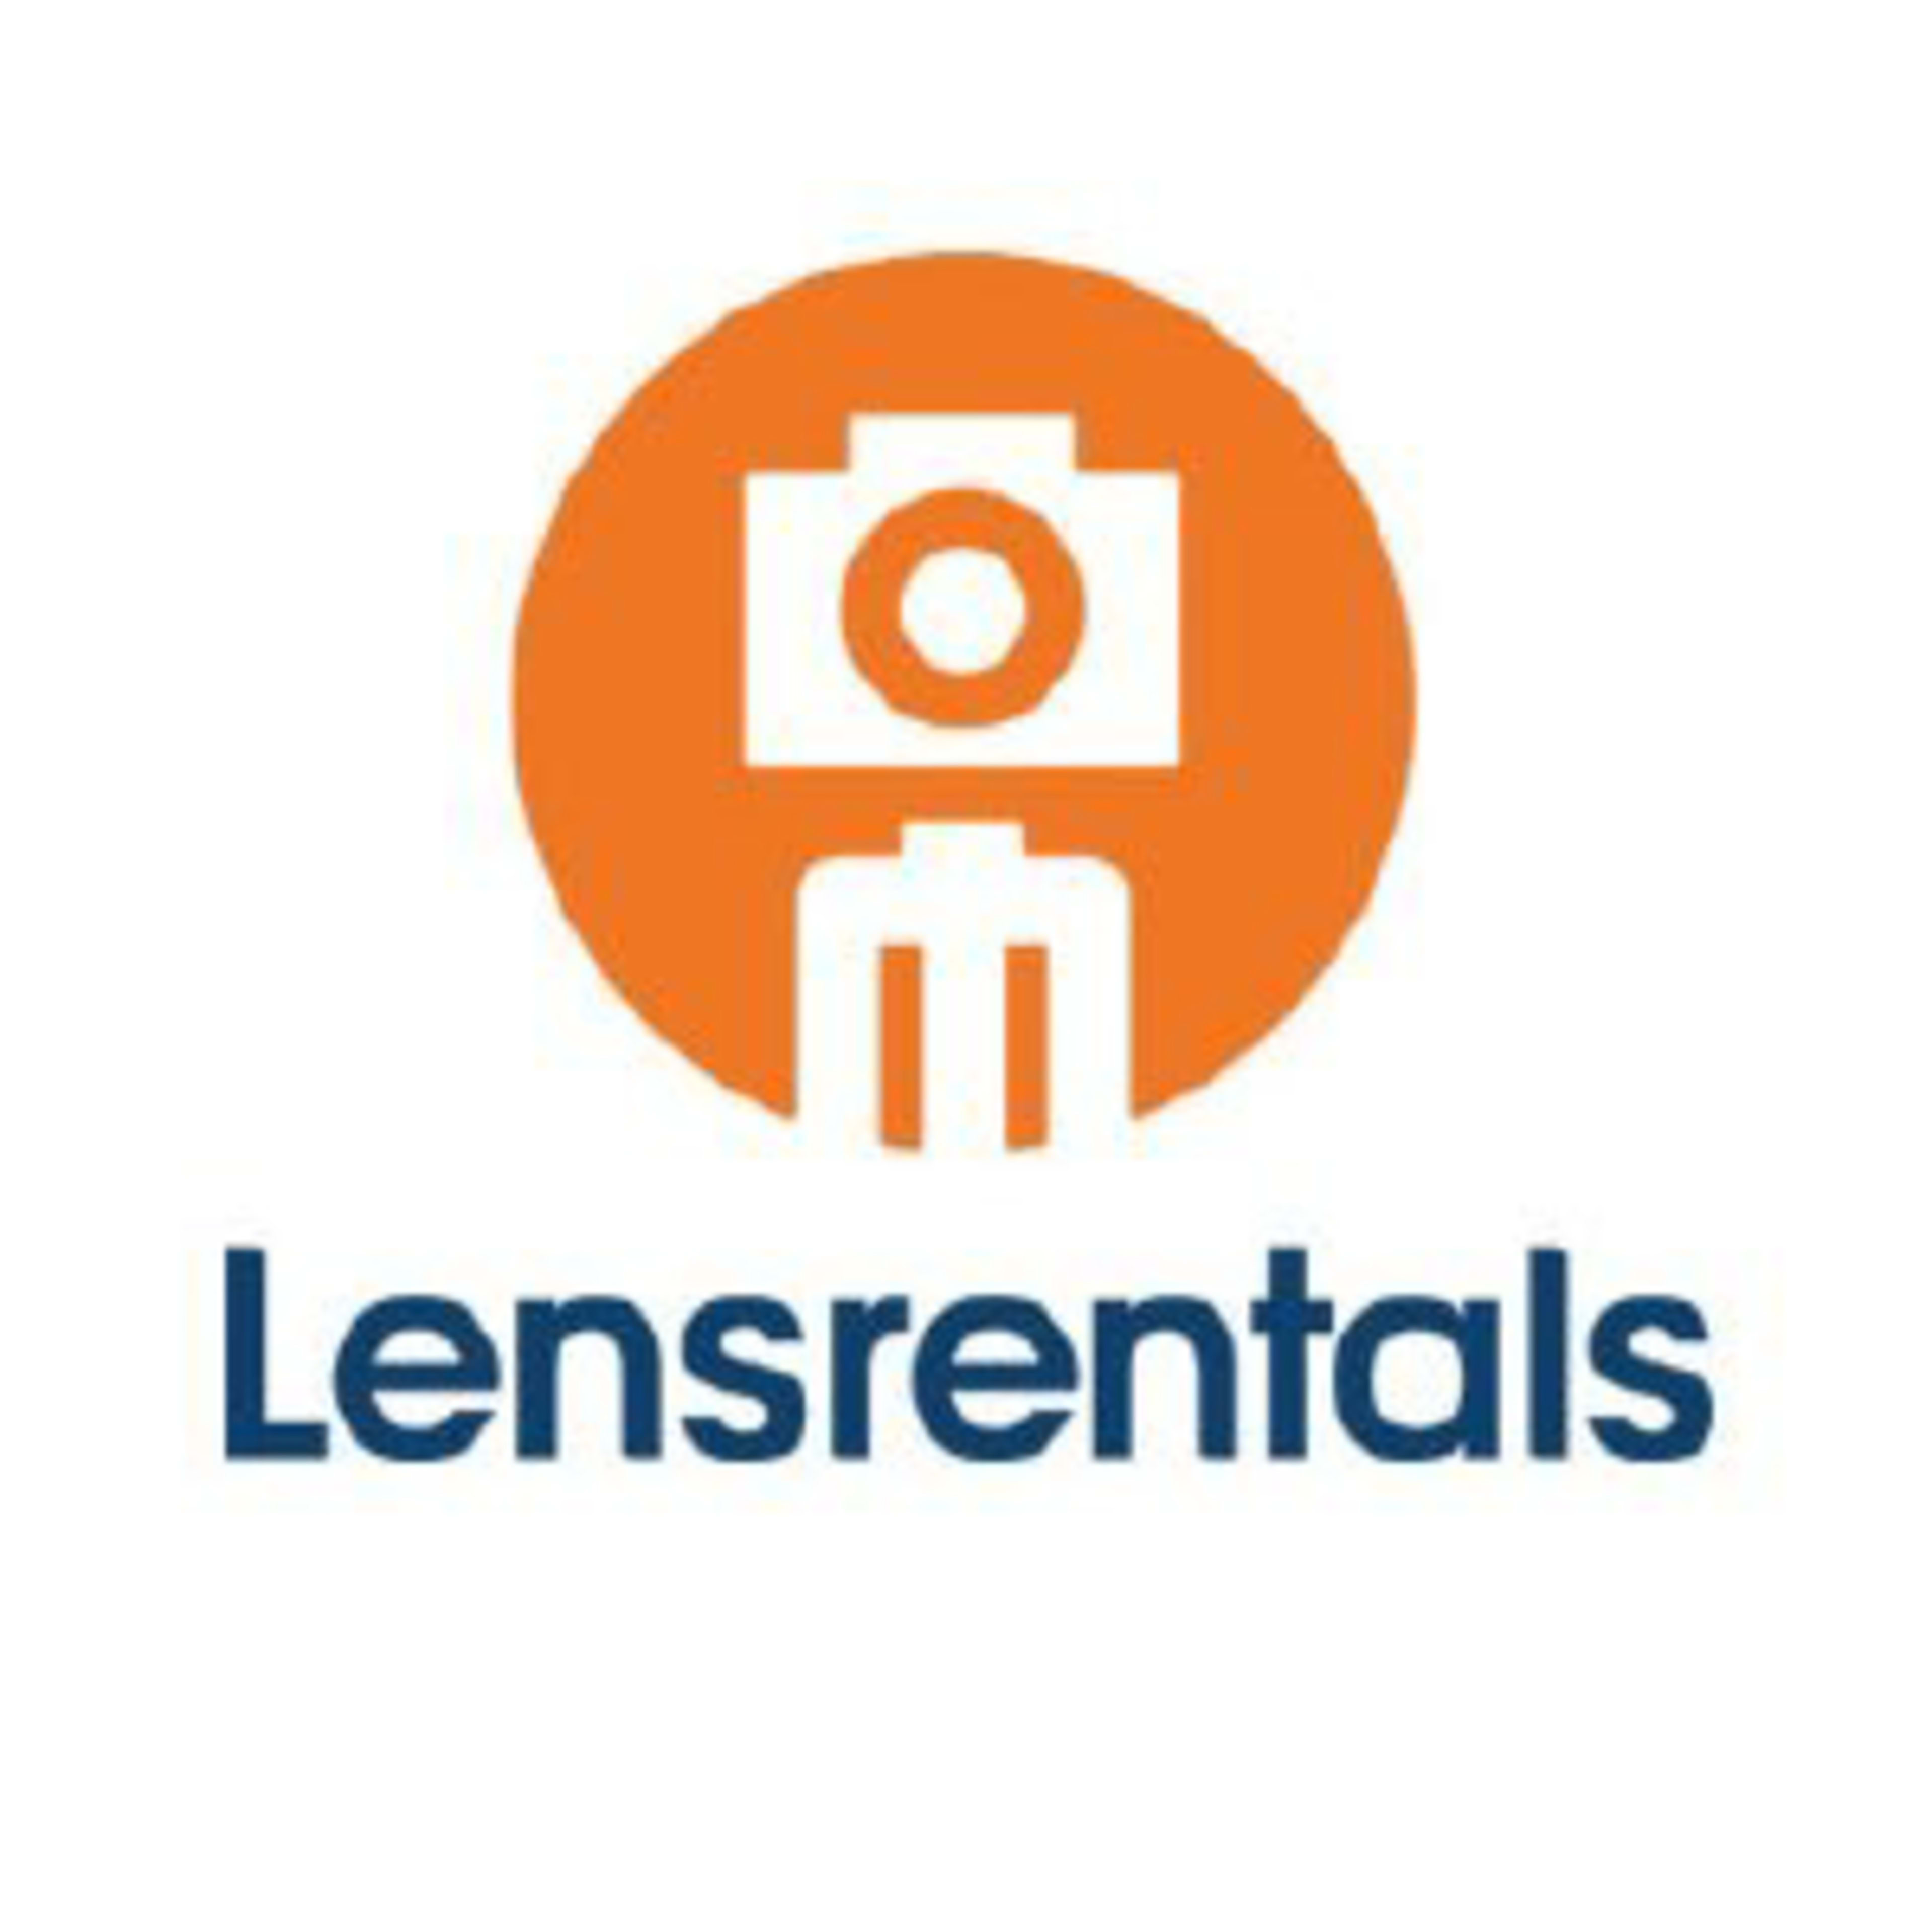 LensRentals.com Code